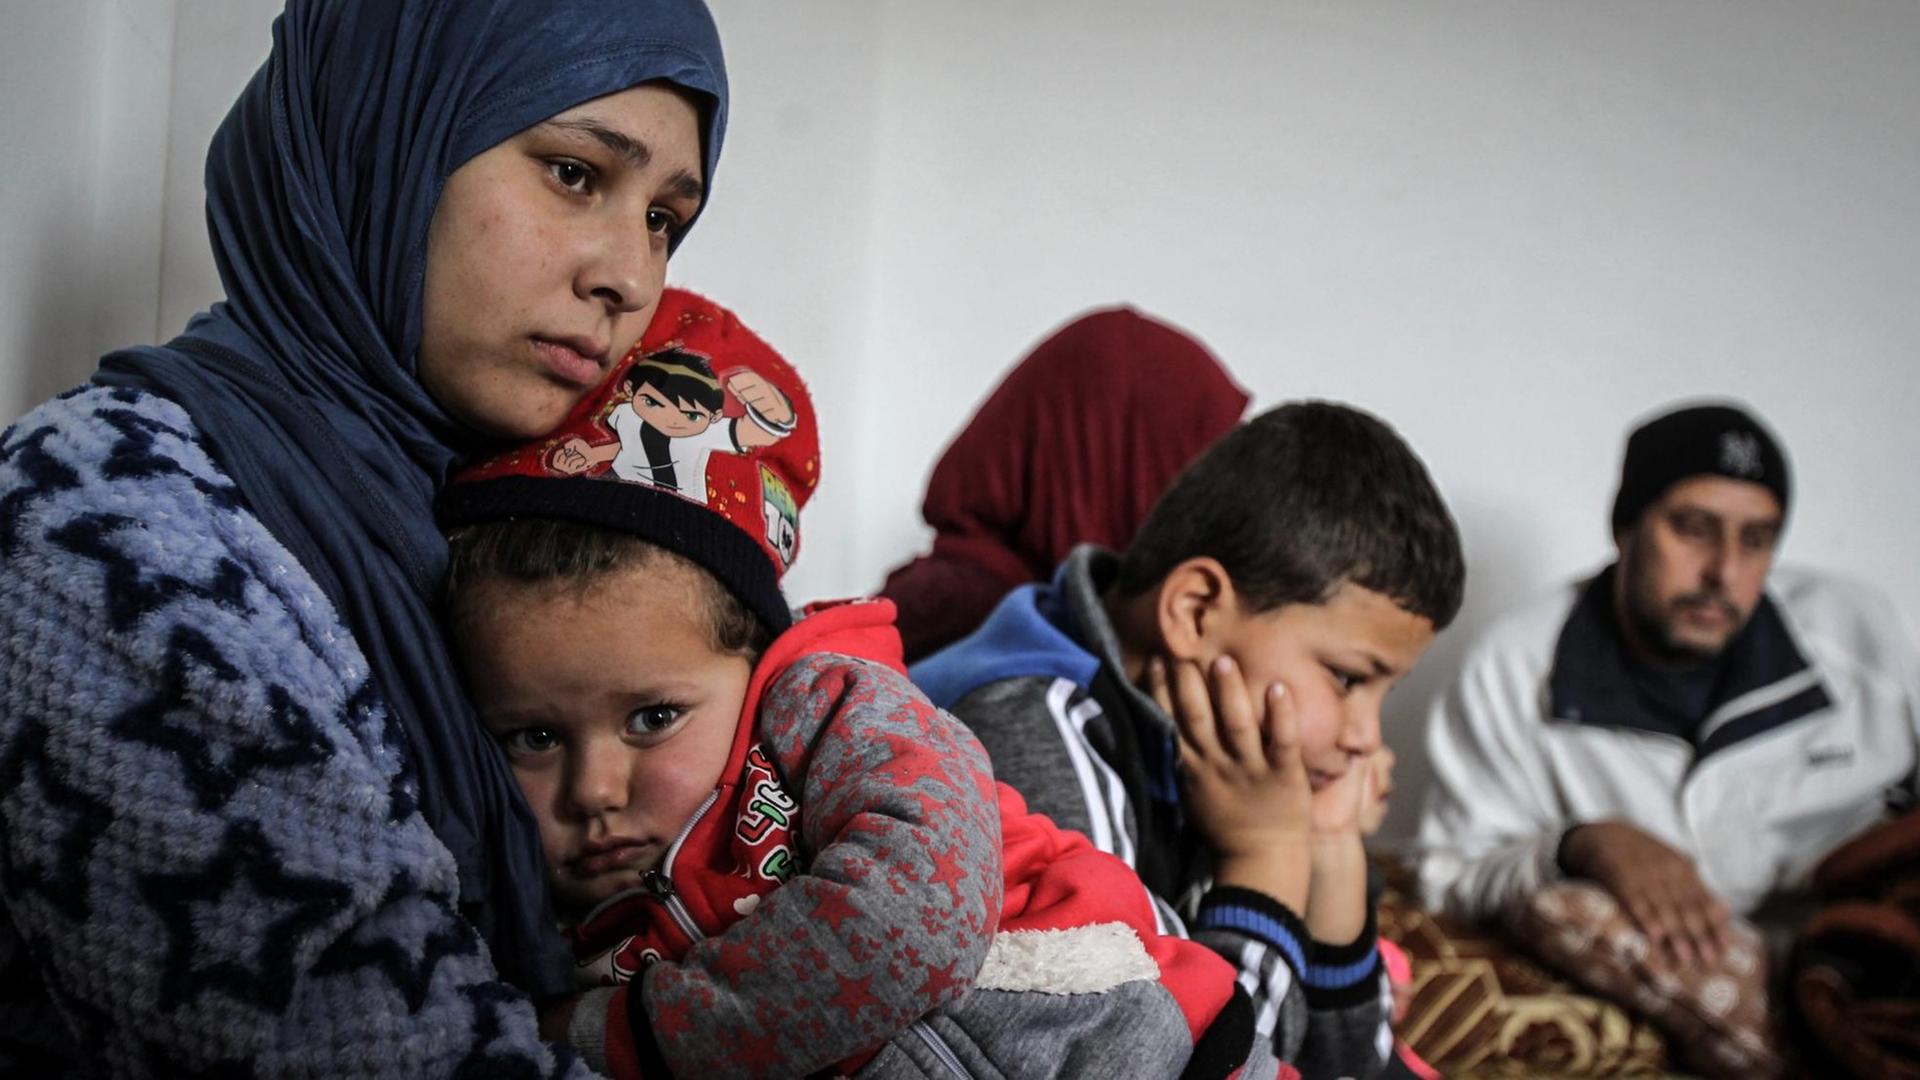 Die 19-jährige Syrerin Amal (l) umarmt ihre dreijährige Tochter Grufran neben ihrem Bruder Mohommad (M) und ihrem Vater Shihab Ahmad al-Abed (r) in einer Wohnung. Amal, ihre Tochter, ihr Vater und ihr Bruder überlebten die illegale Grenzüberquerung von Syrien in den Libanon, bei der mehrere andere Syrer erfroren. Der Libanon beheimatet derzeit mehr als eine Million vor dem Bürgerkrieg geflohene Syrer.